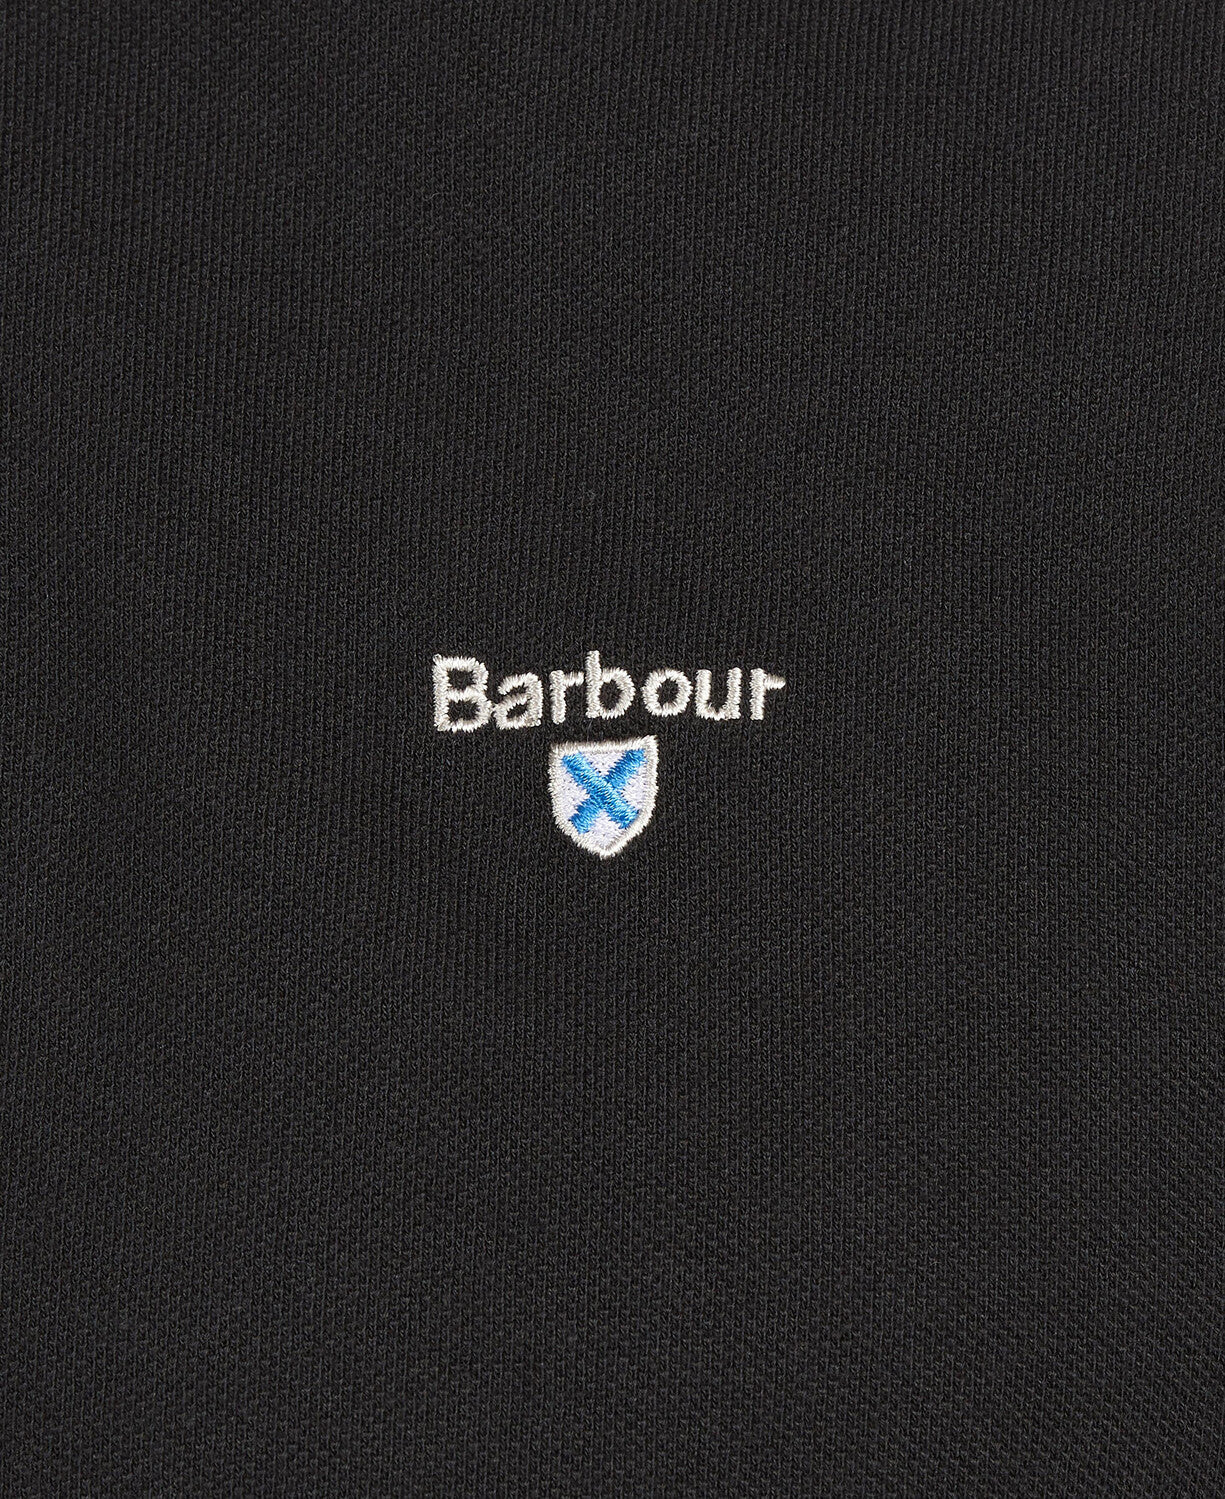 Barbour Tartan Pique Polo - Black/Modern